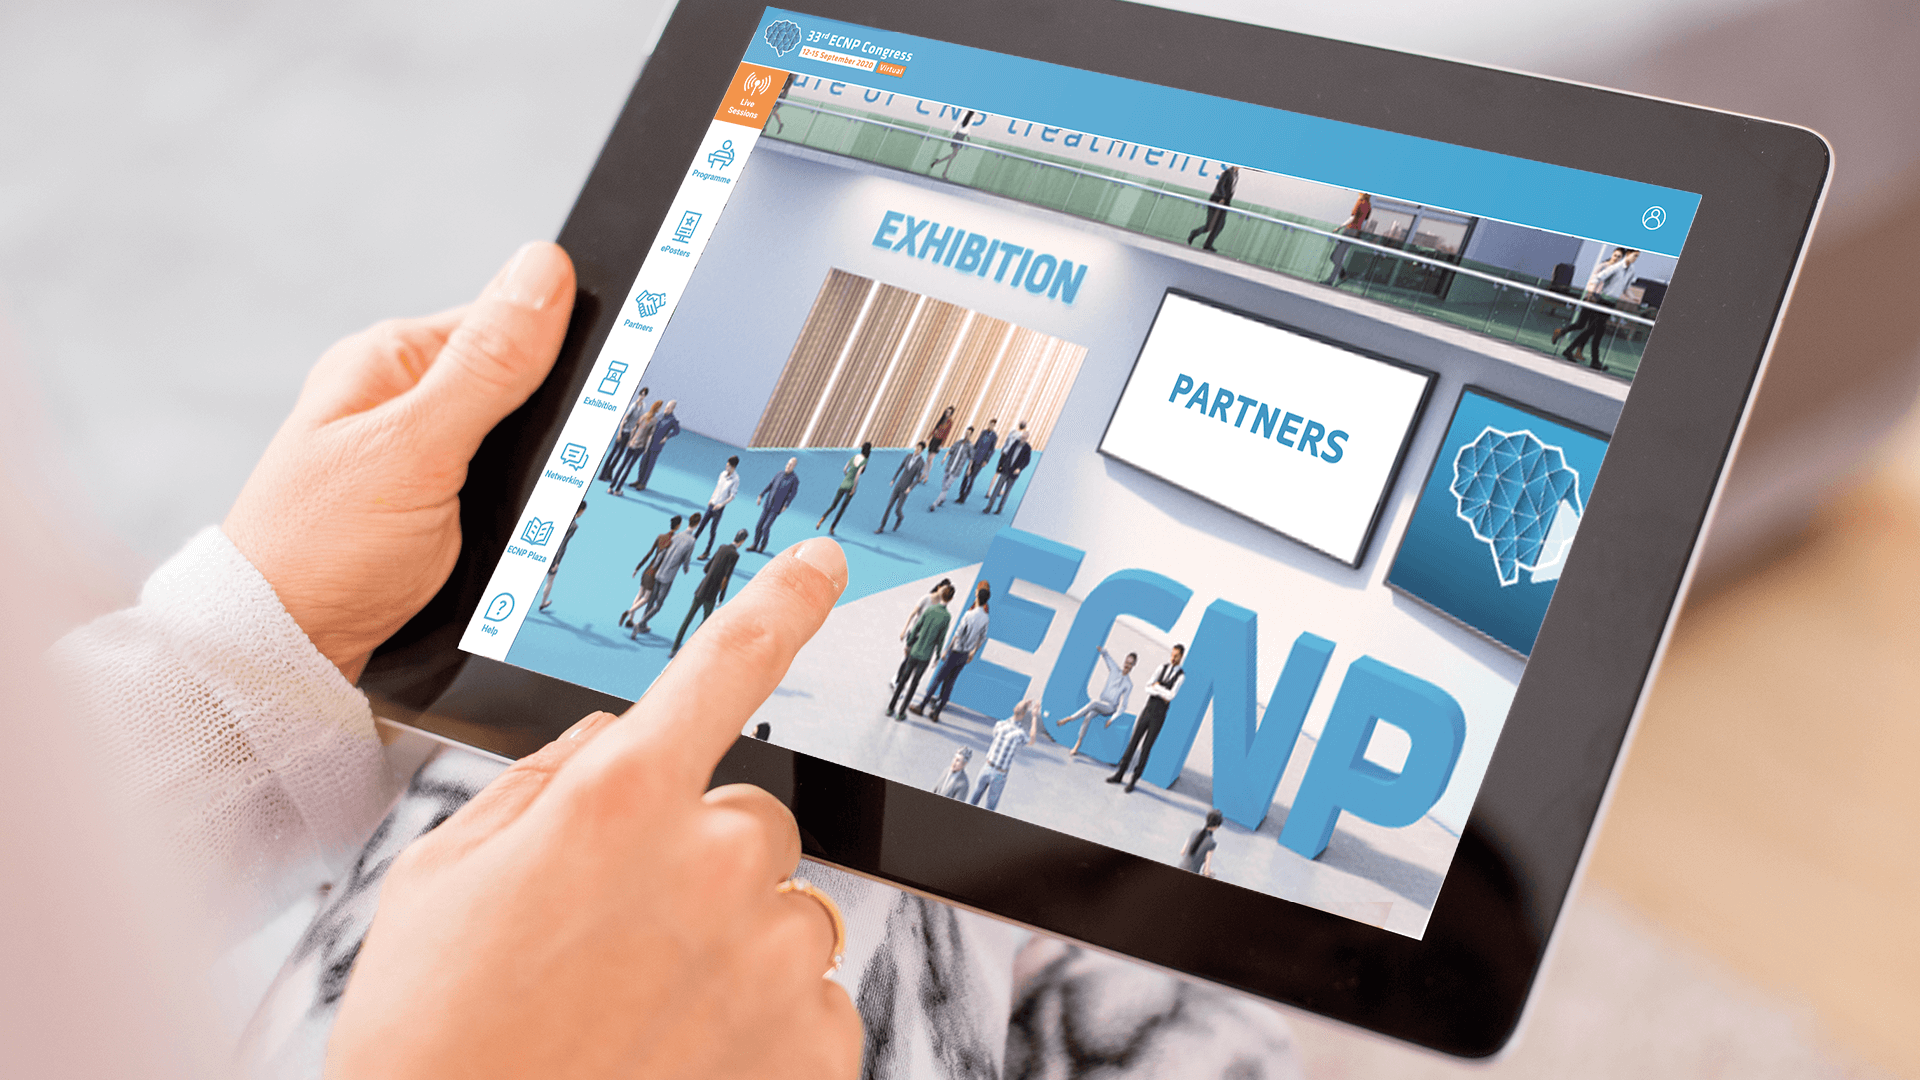 ECNP Virtual Congress iPad Image